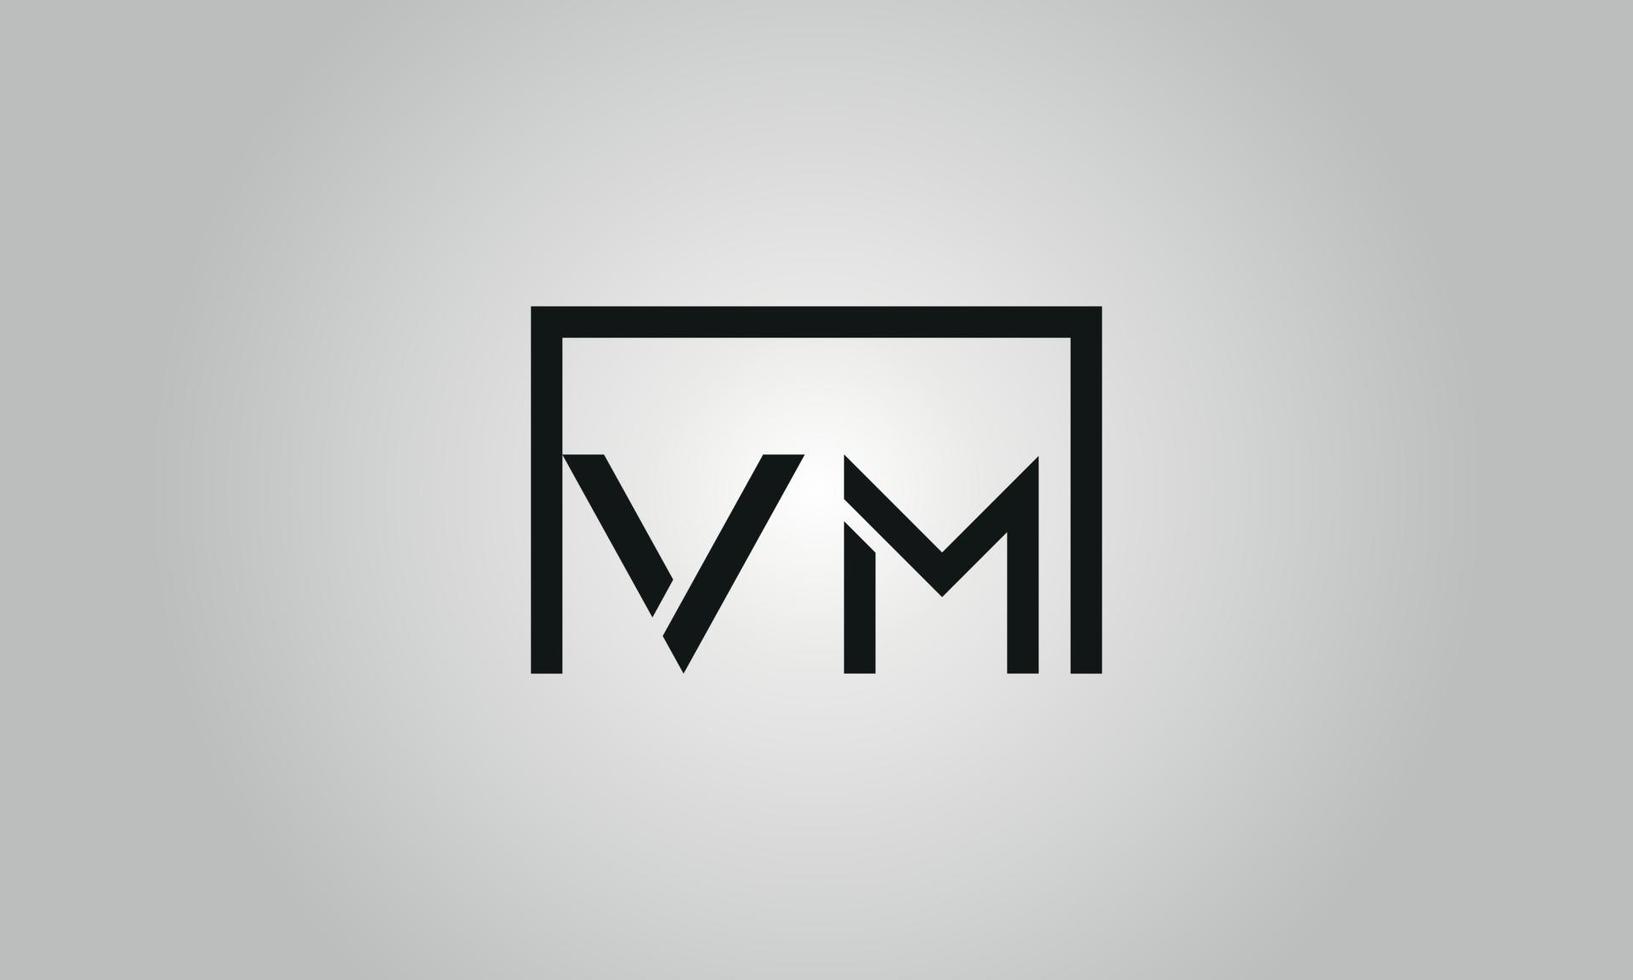 brief vm logo ontwerp. vm logo met plein vorm in zwart kleuren vector vrij vector sjabloon.